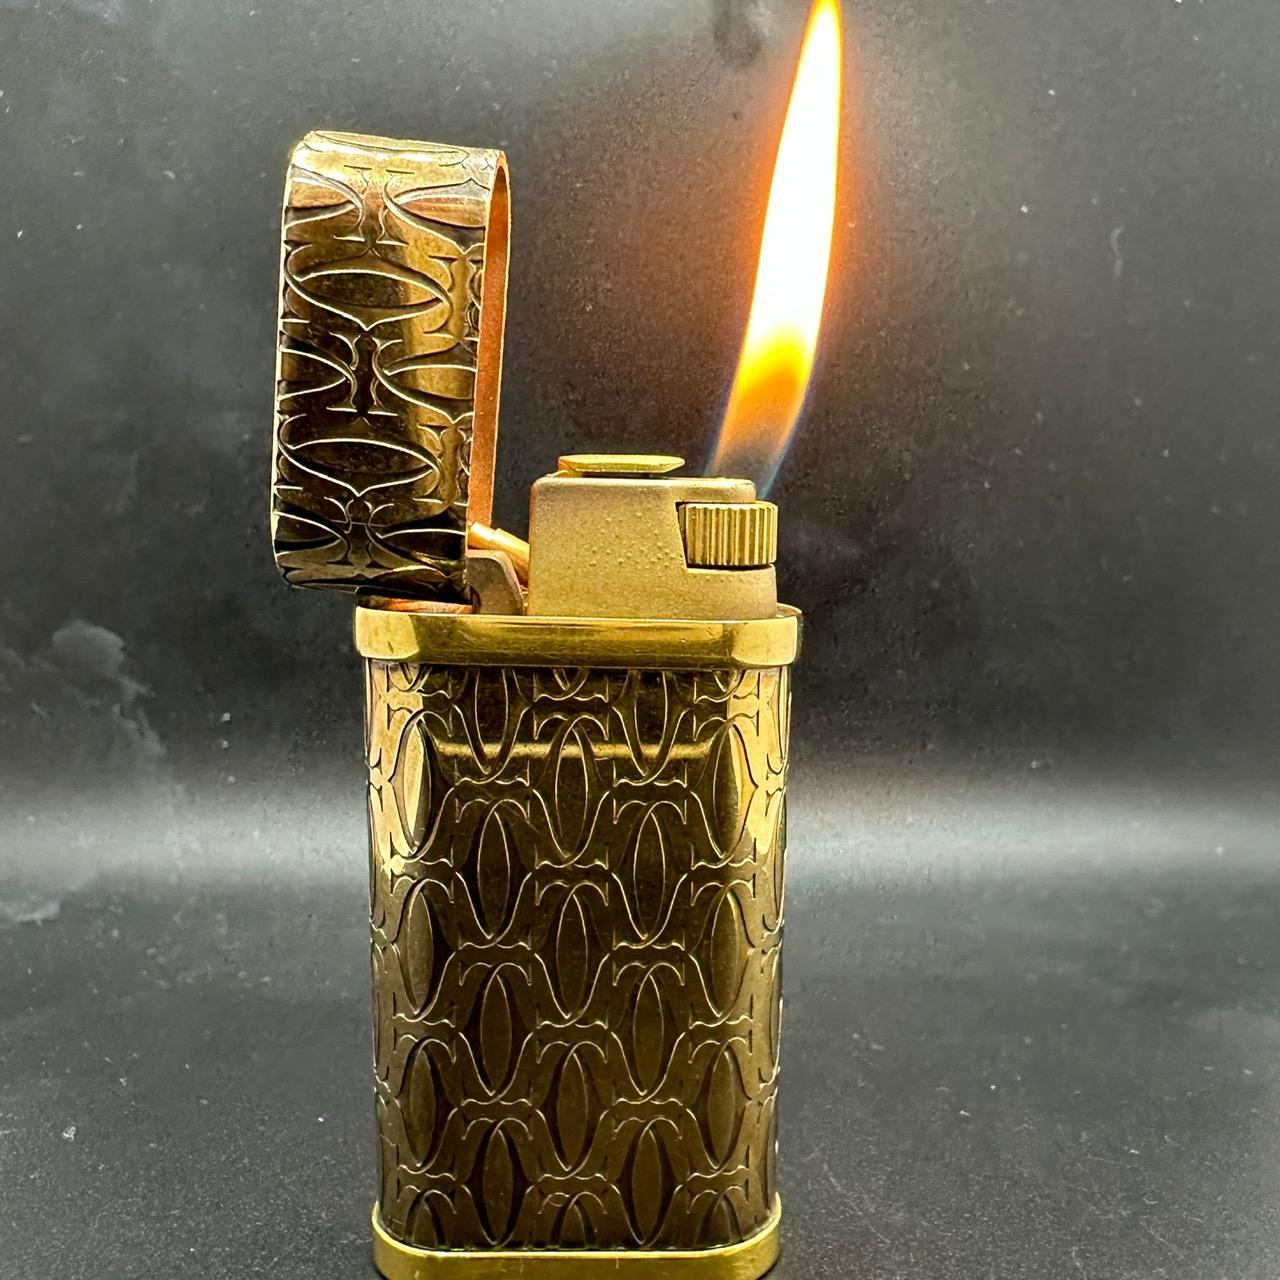 Le must de Cartier Logo Gold Feuerzeug 
Sehr selten 
Cartier Feuerzeug Gold vergoldet 18k Gold  
Kommt mit original Cartier Etui
Außen neuwertig und funktionstüchtig  
CIRCA 2000
Das Feuerzeug zündet, Funken und Flammen